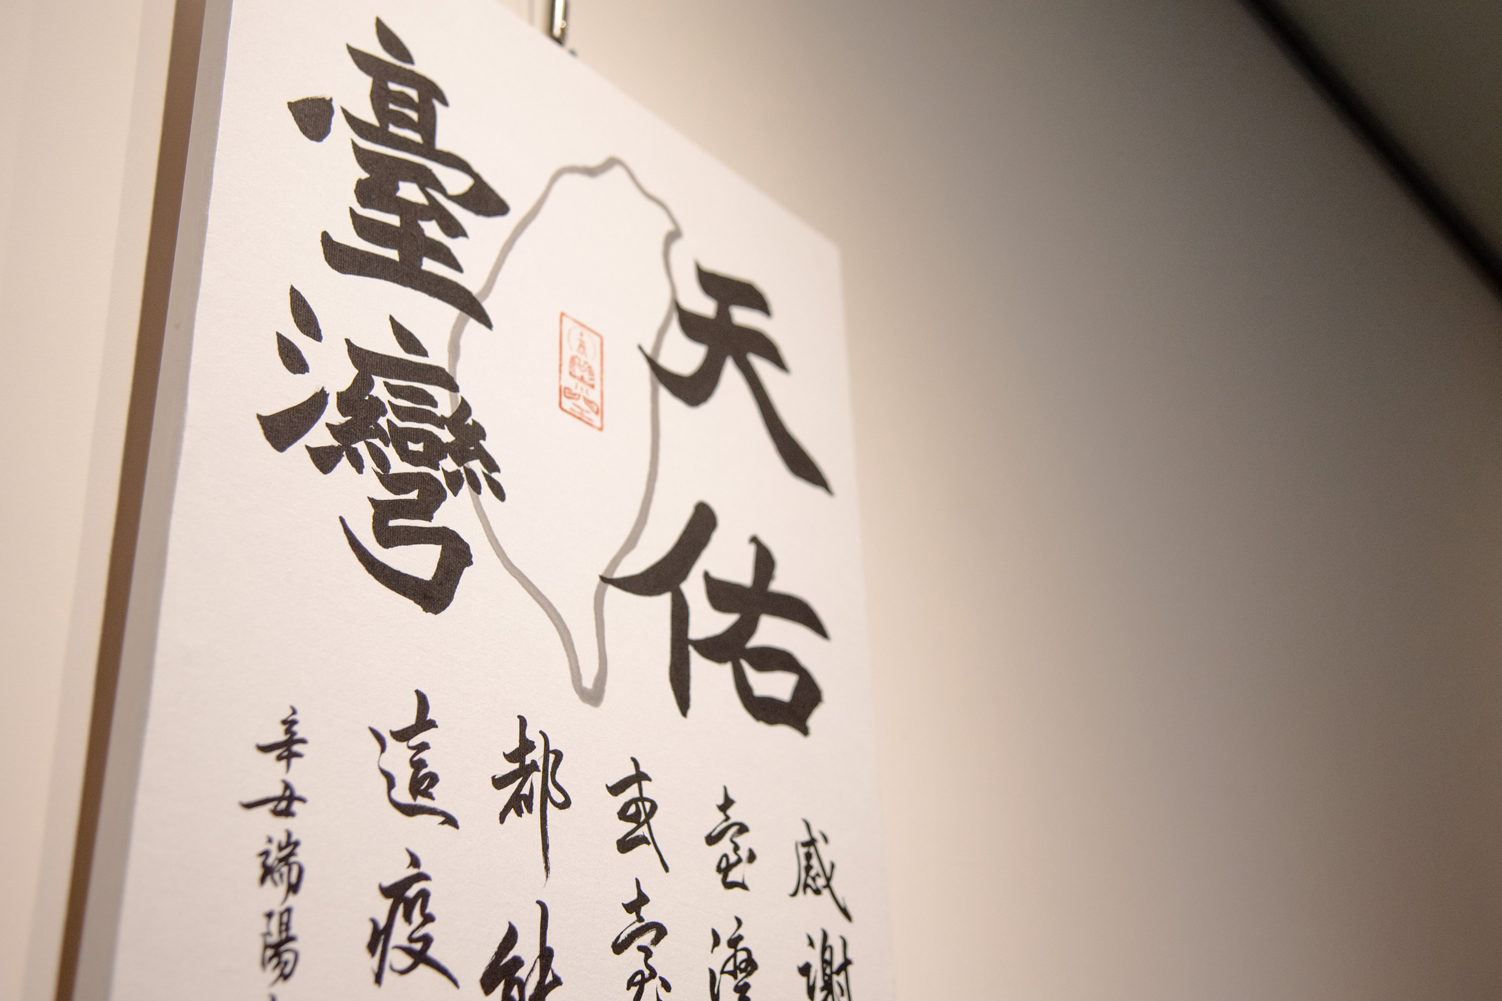 20211124書寫疫情心境獲好評 華梵學生書法作品將於臺灣文獻館展出